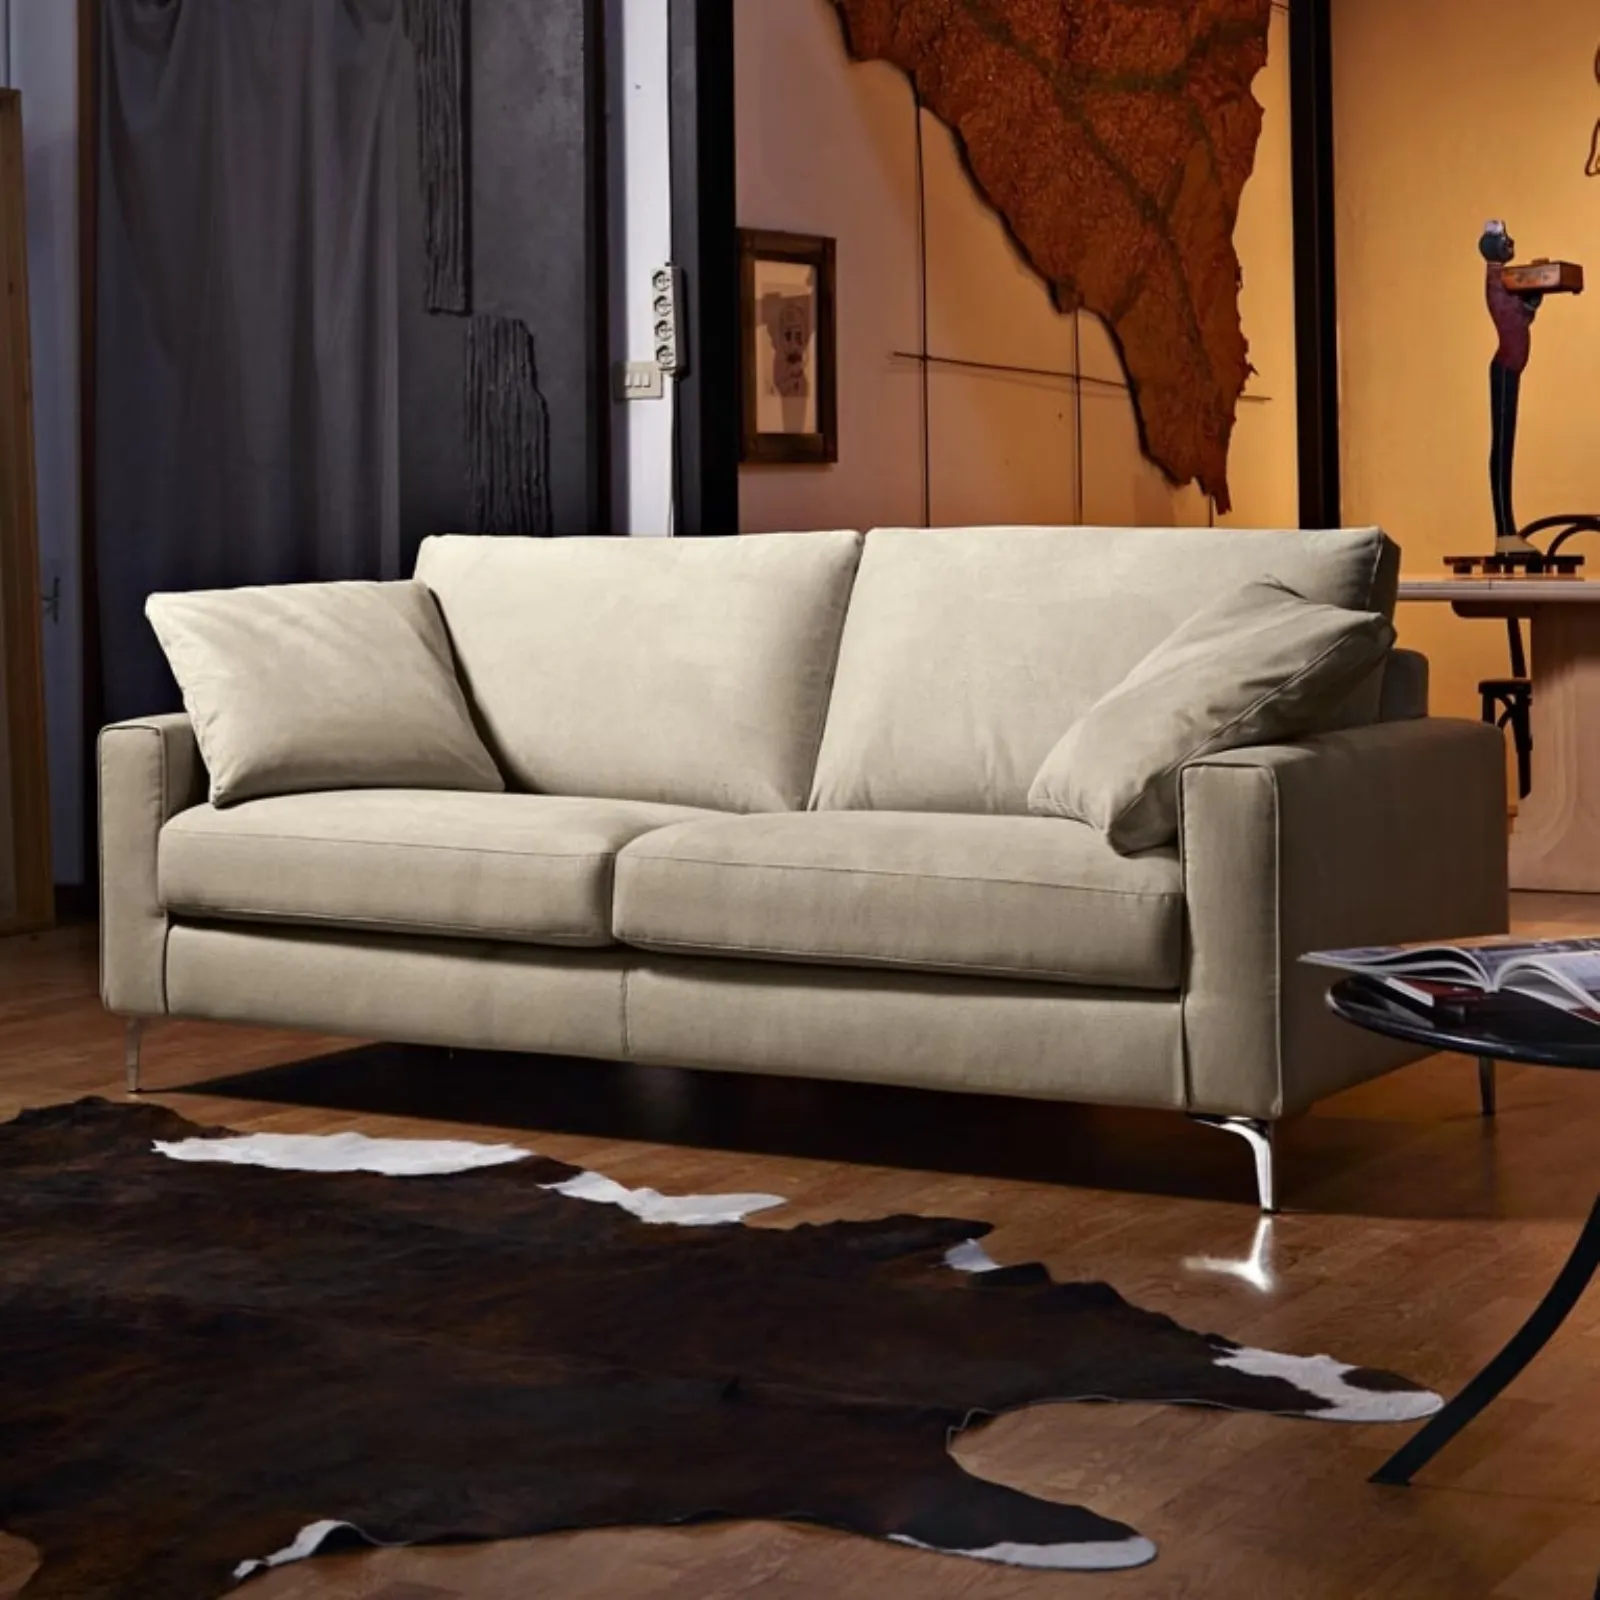 poltrone e sof divani di qualit divani moderni